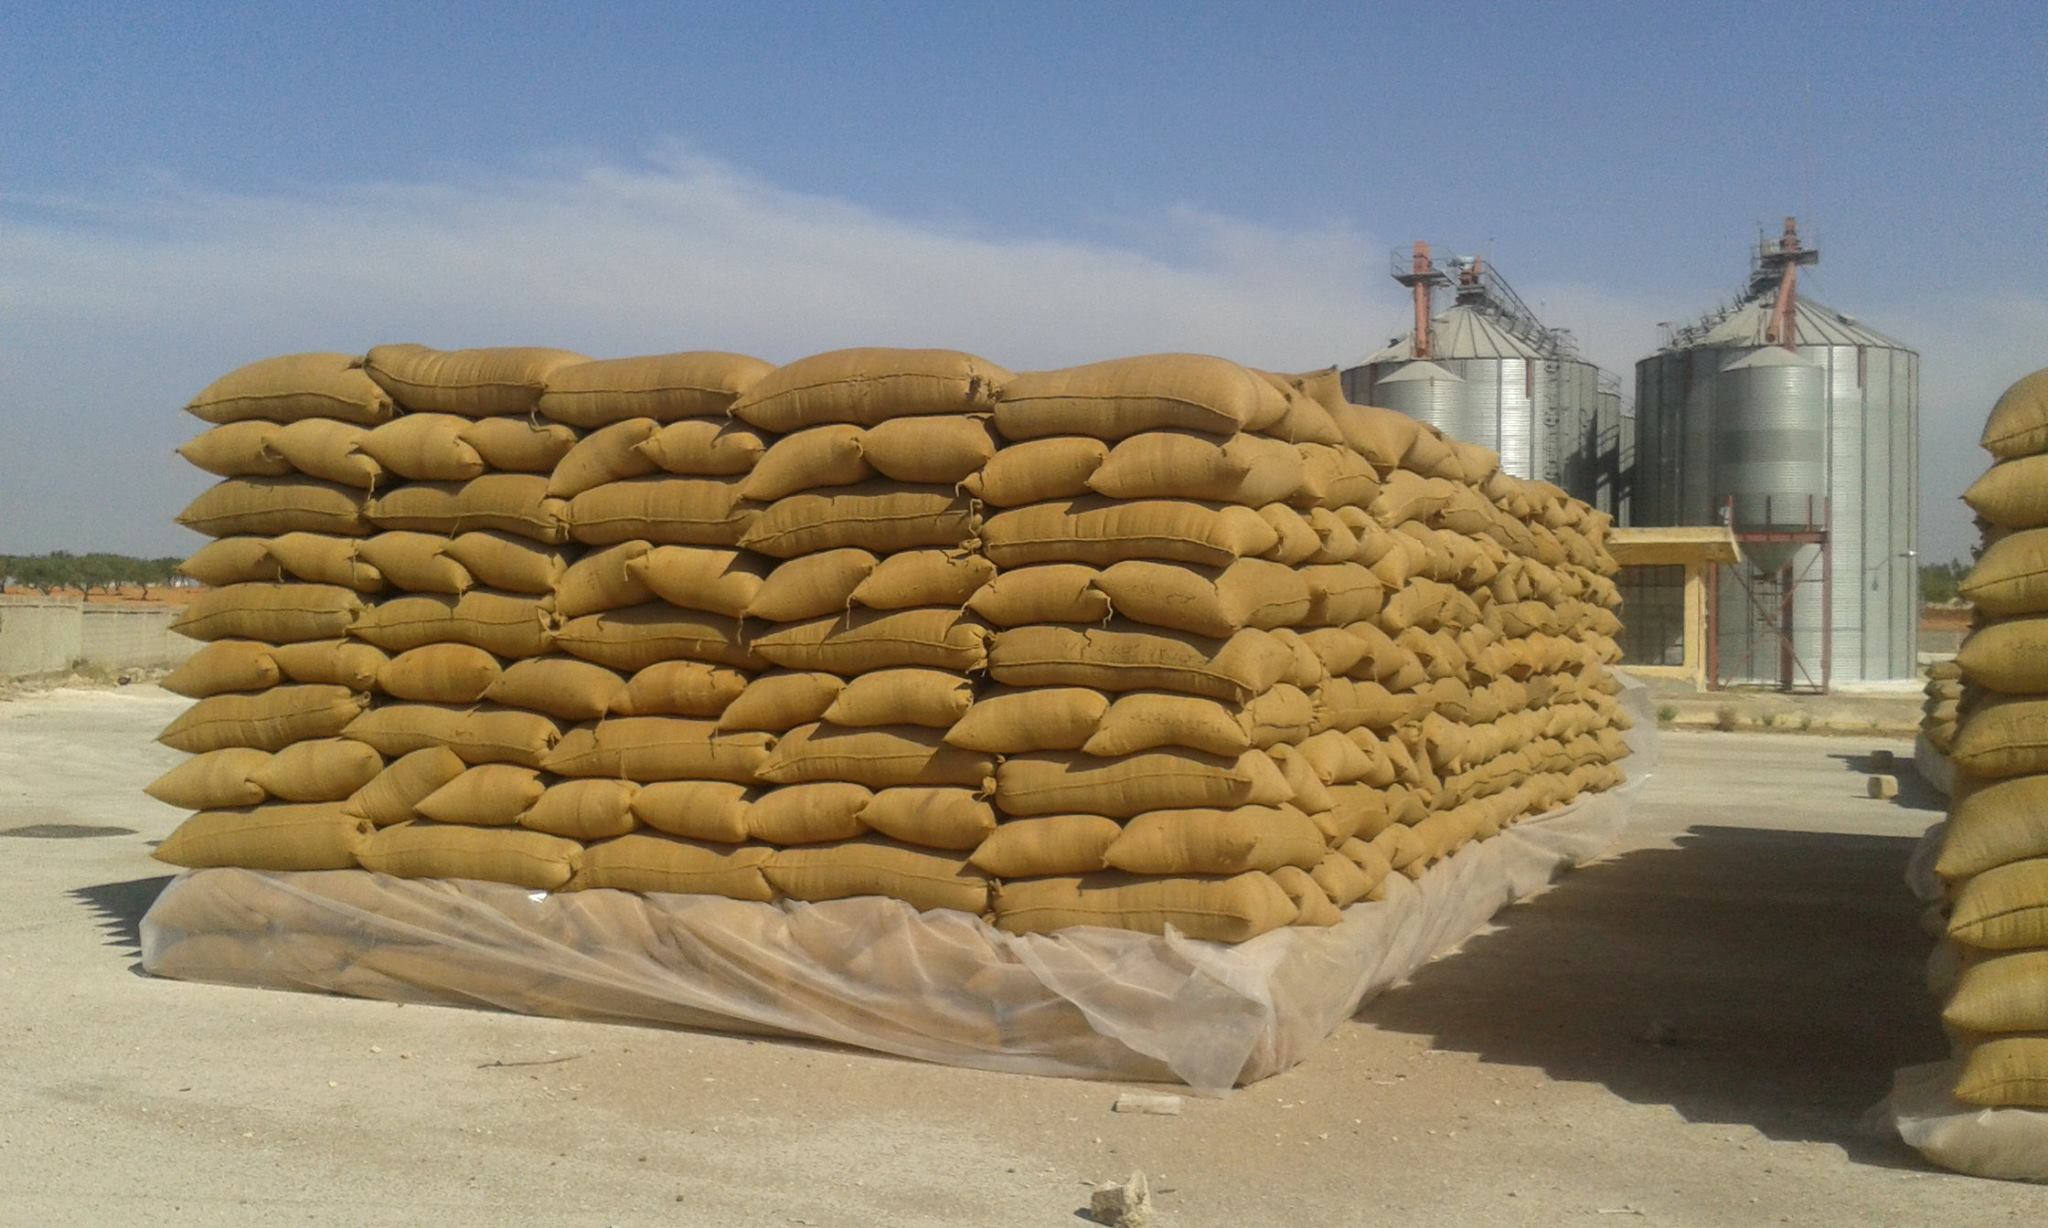   احتياطي مصر من القمح يكفي 6 أشهر